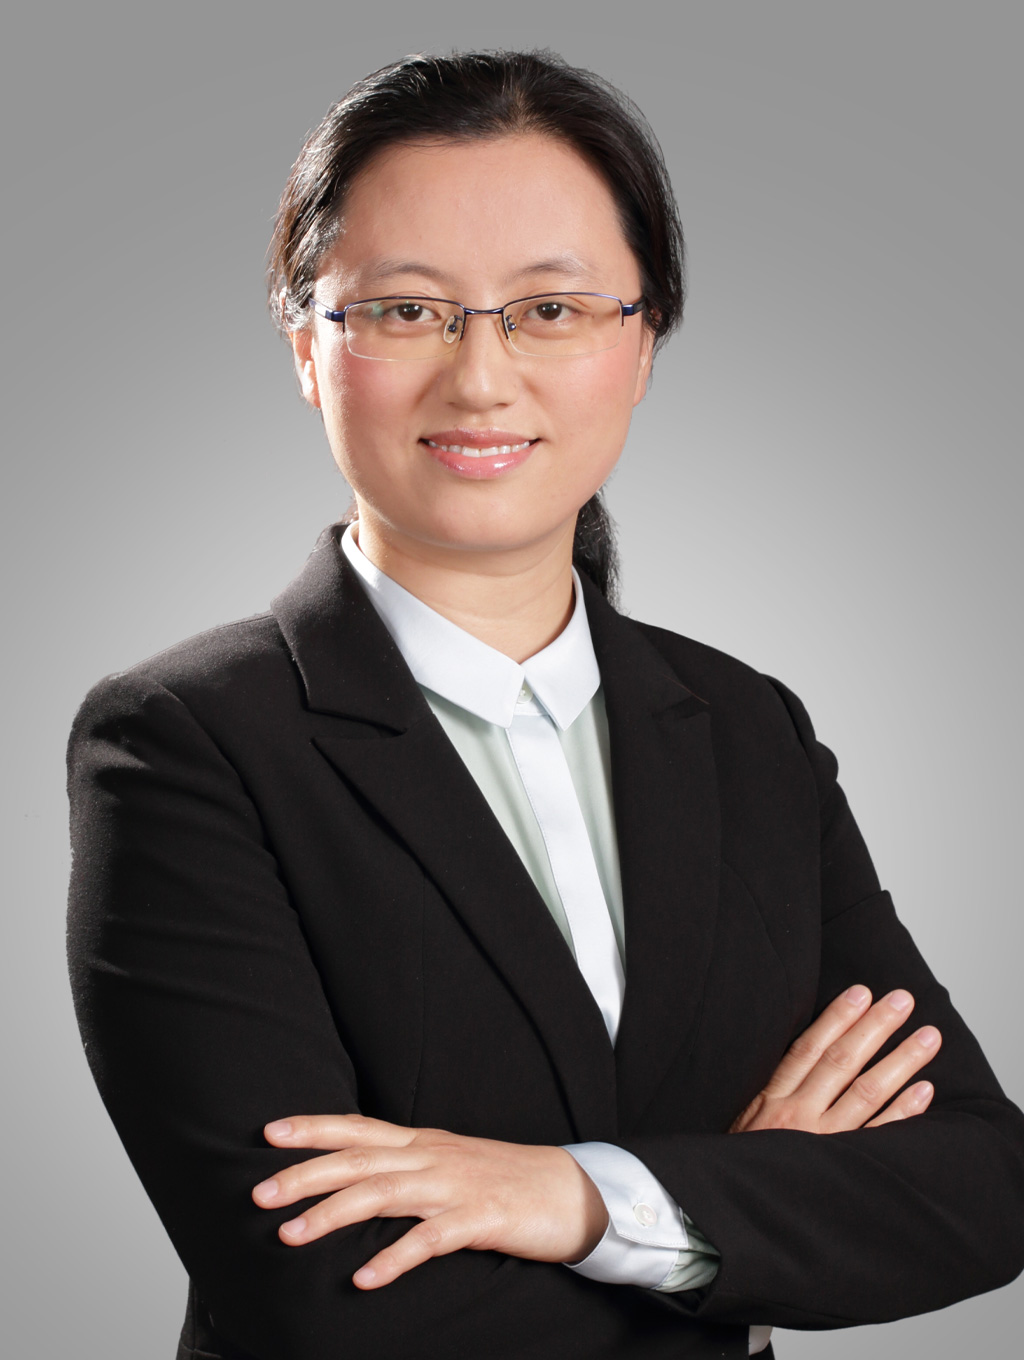 Hanmei Chen